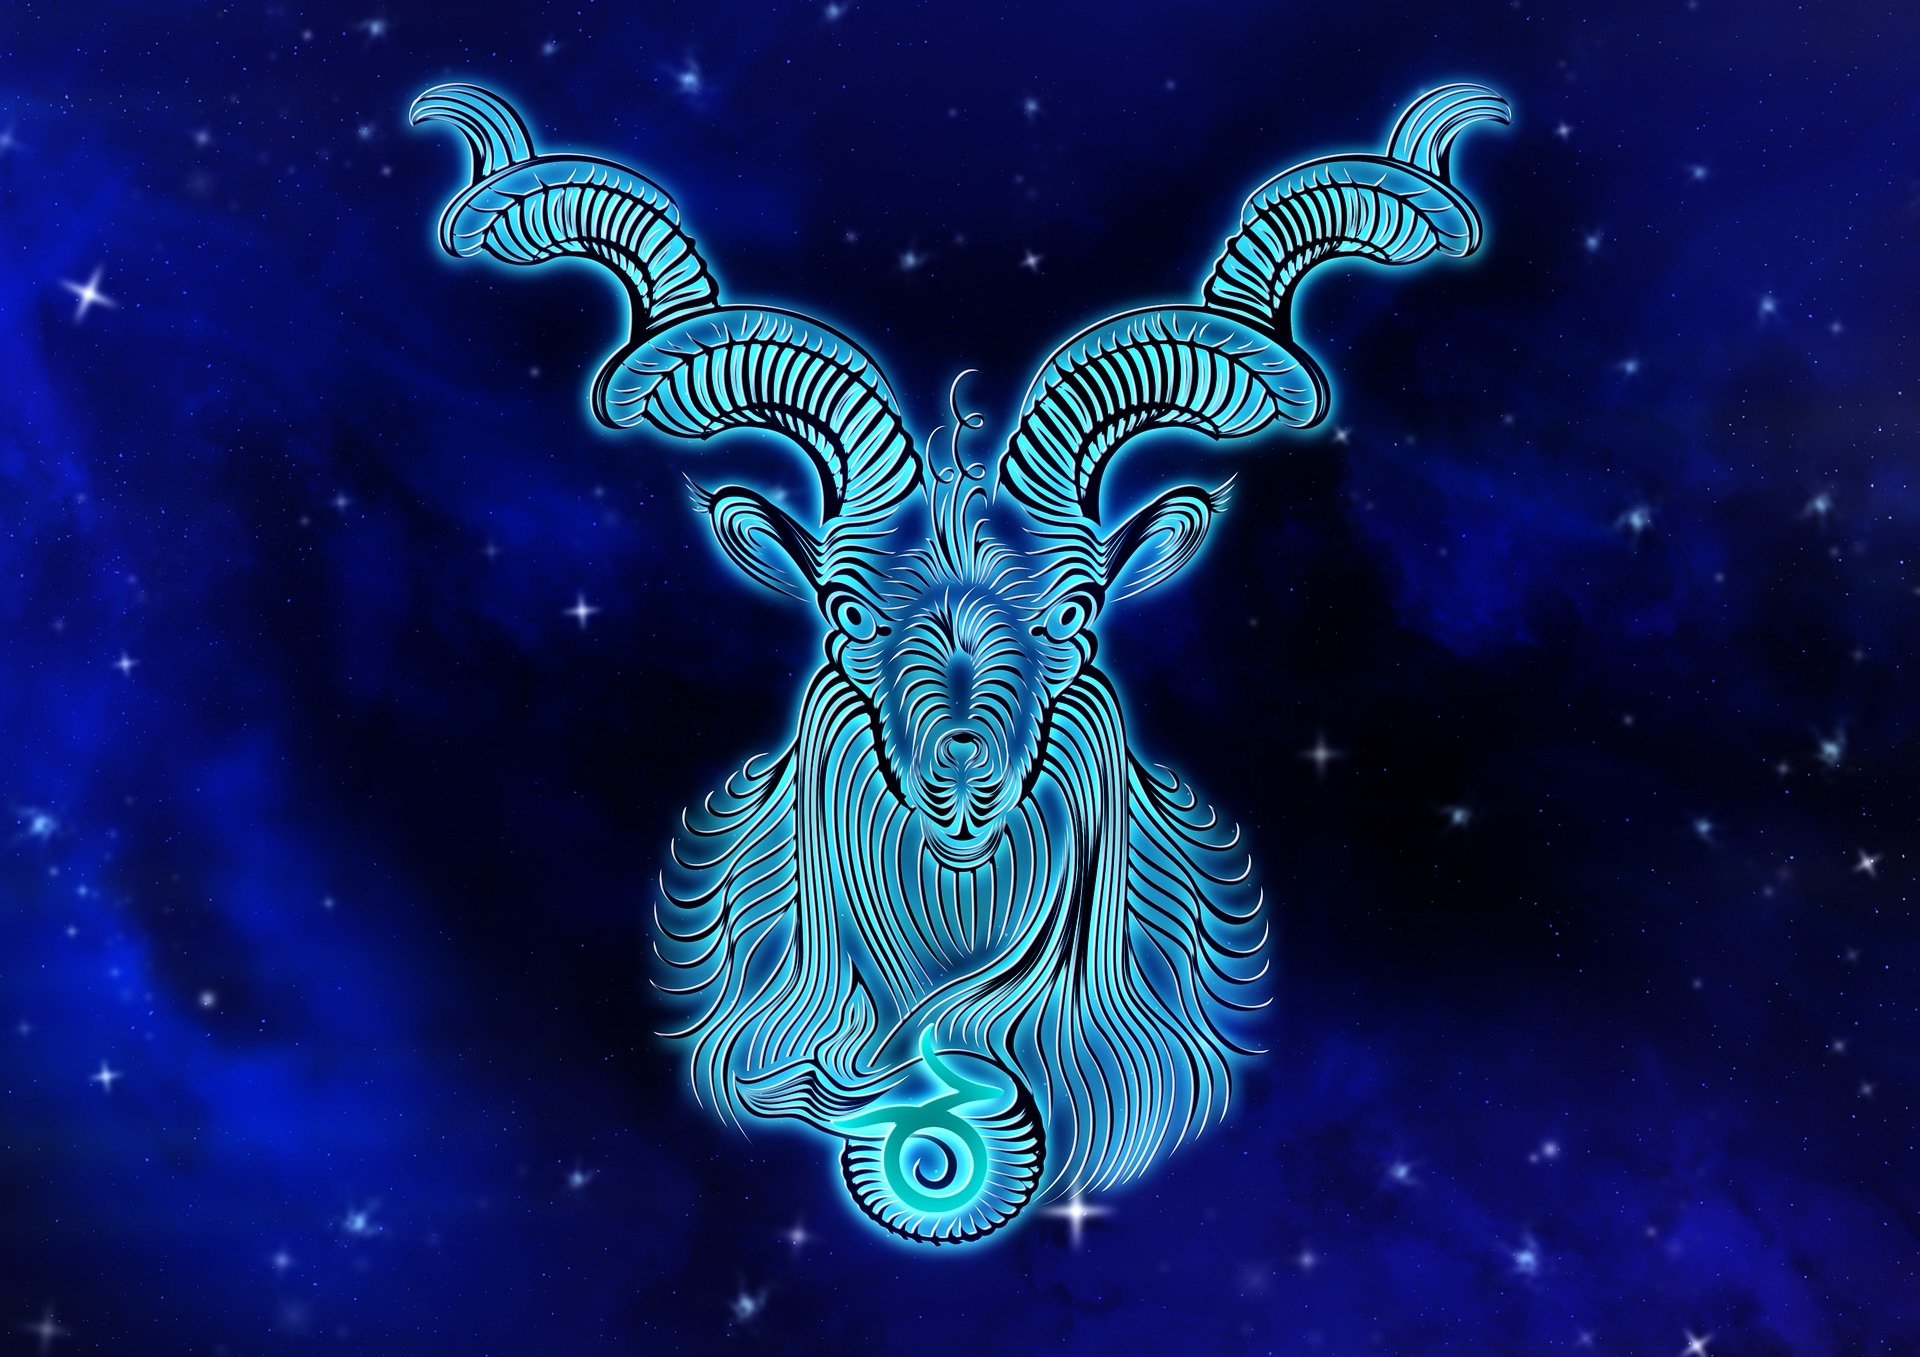 Blue Capricorn the Ram